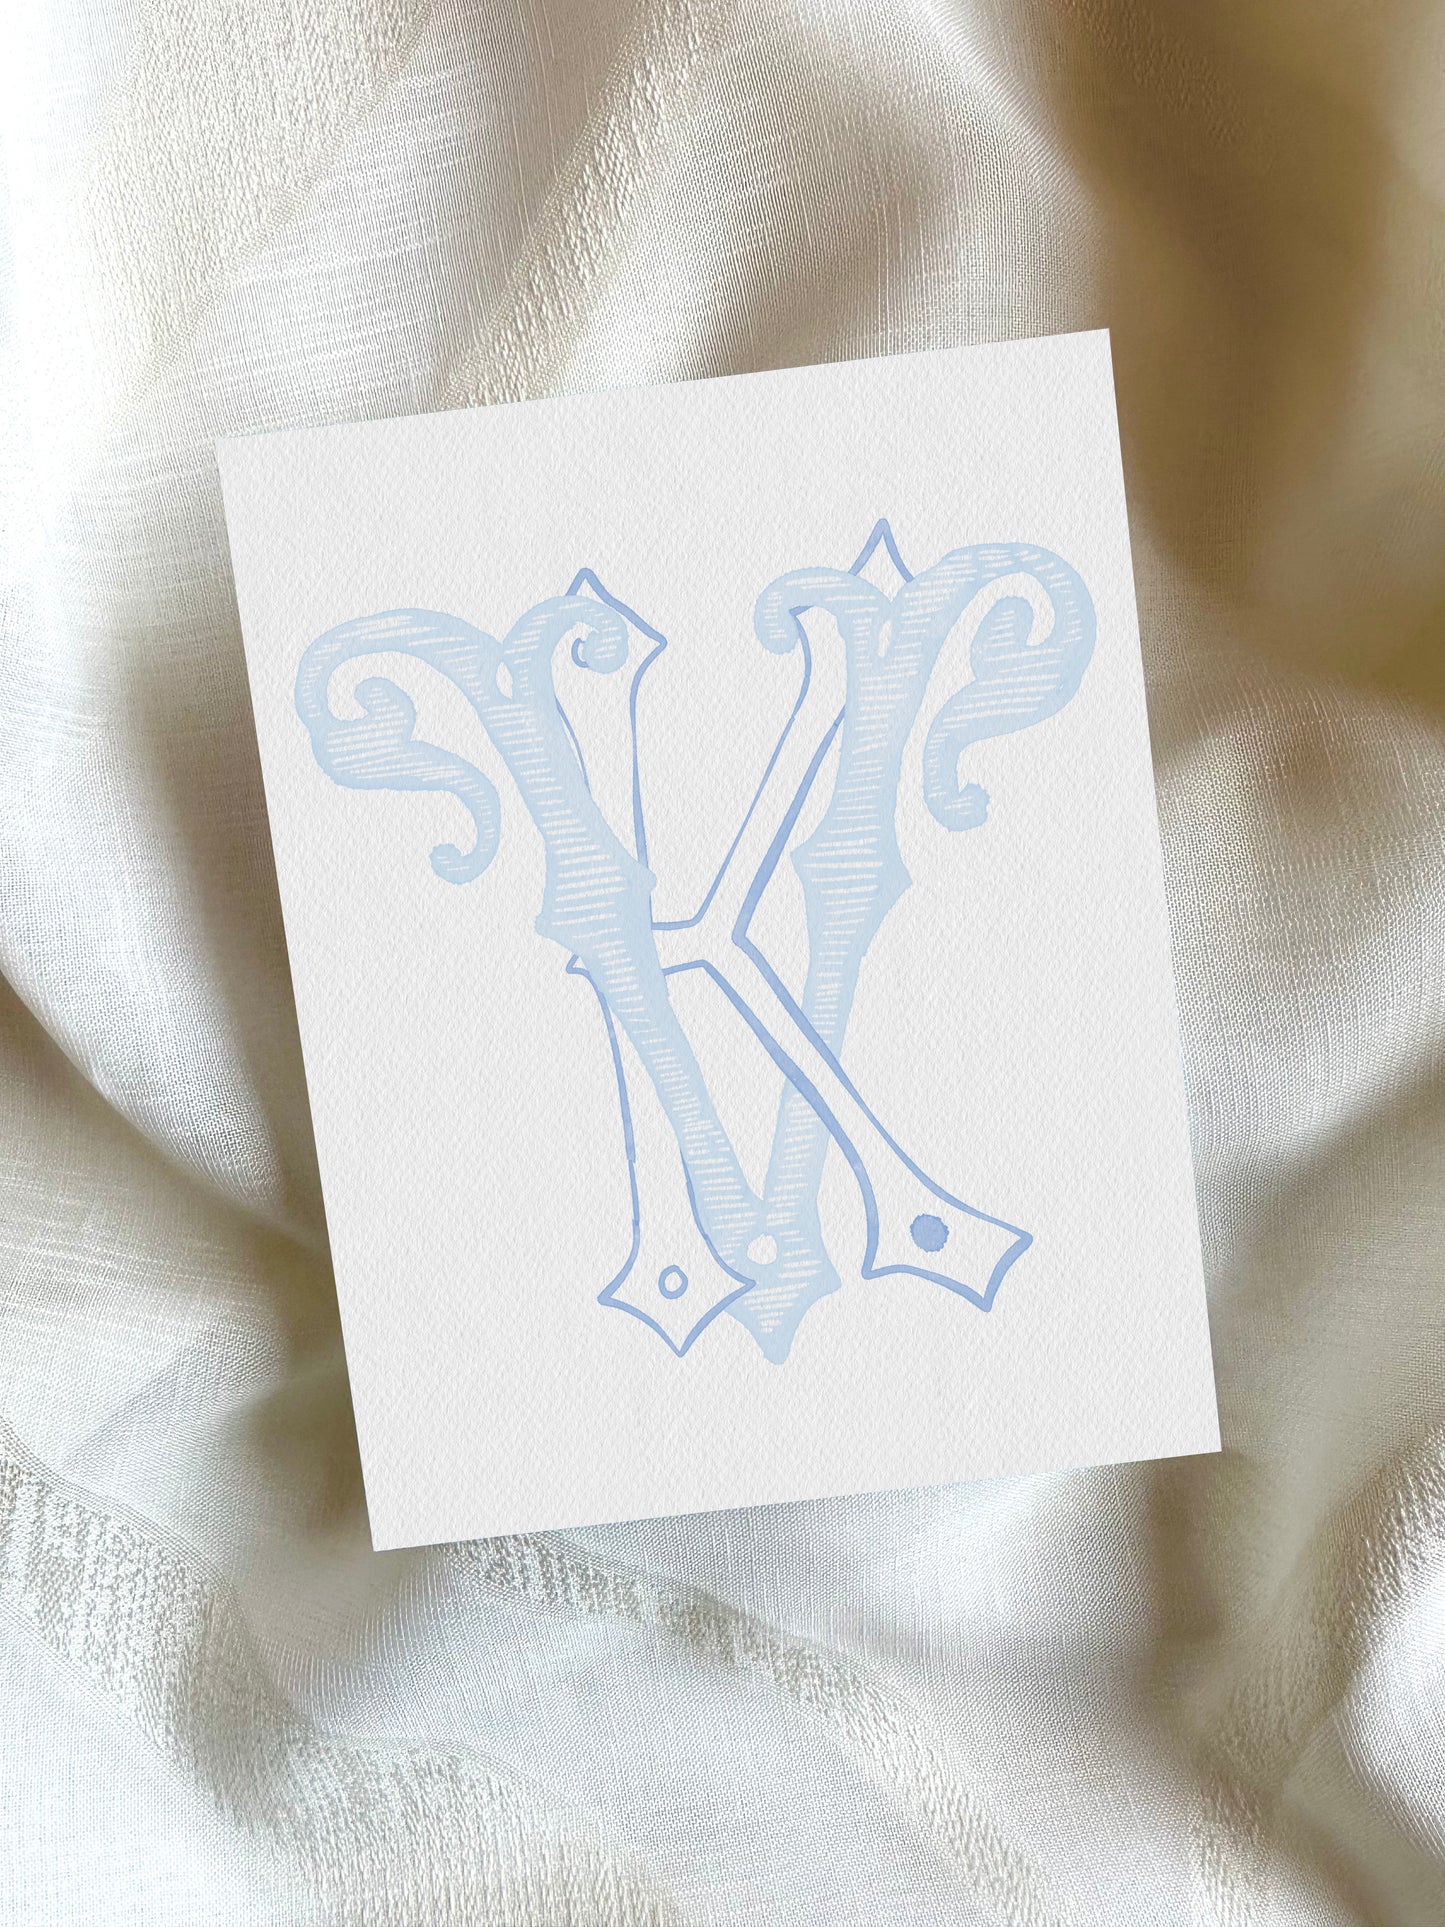 2 Letter Monogram with Letters KV VK | Digital Download - Wedding Monogram SVG, Personal Logo, Wedding Logo for Wedding Invitations The Wedding Crest Lab